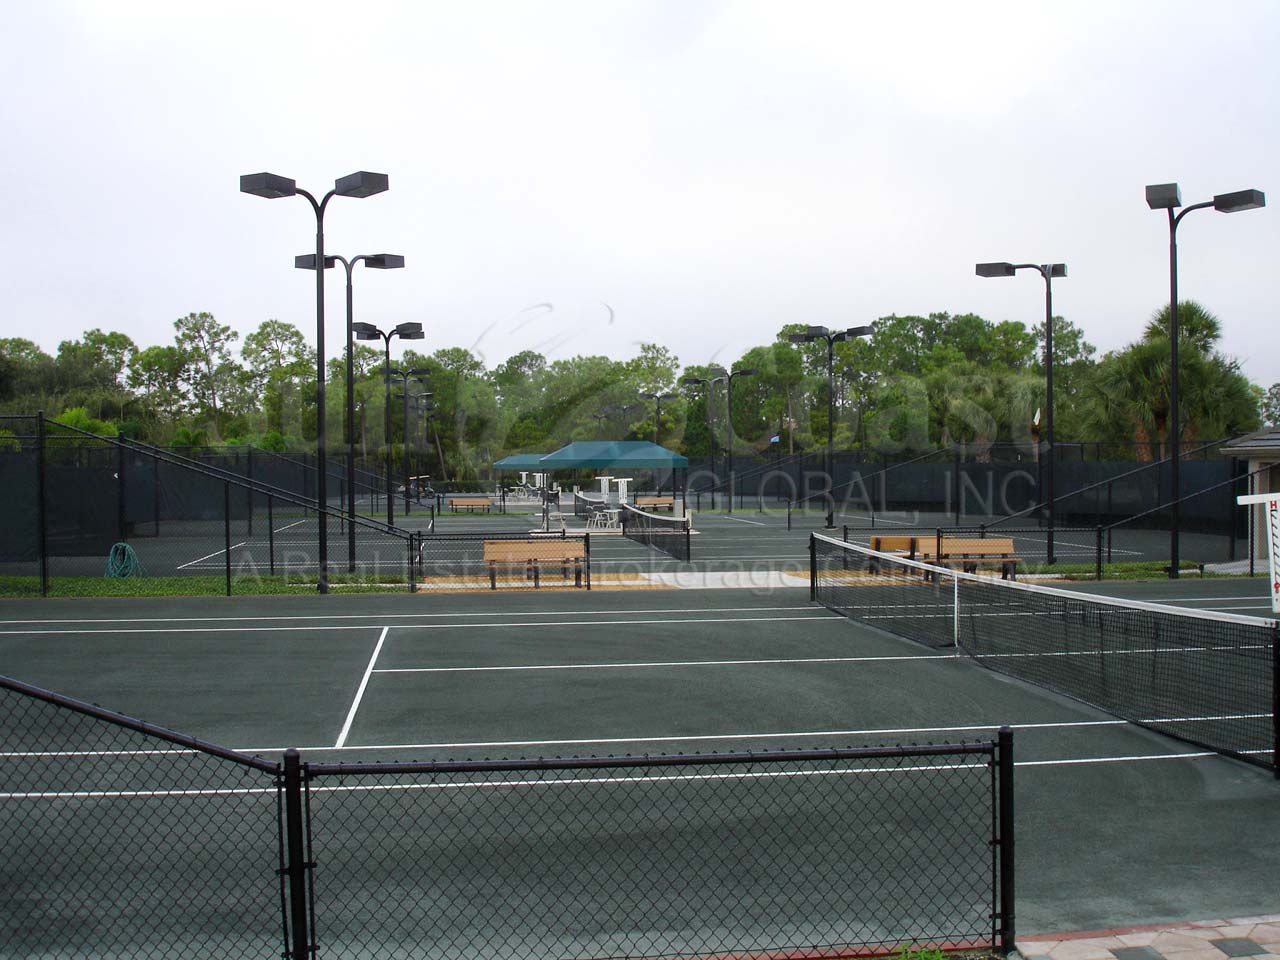 VANDERBILT COUNTRY CLUB Tennis Courts